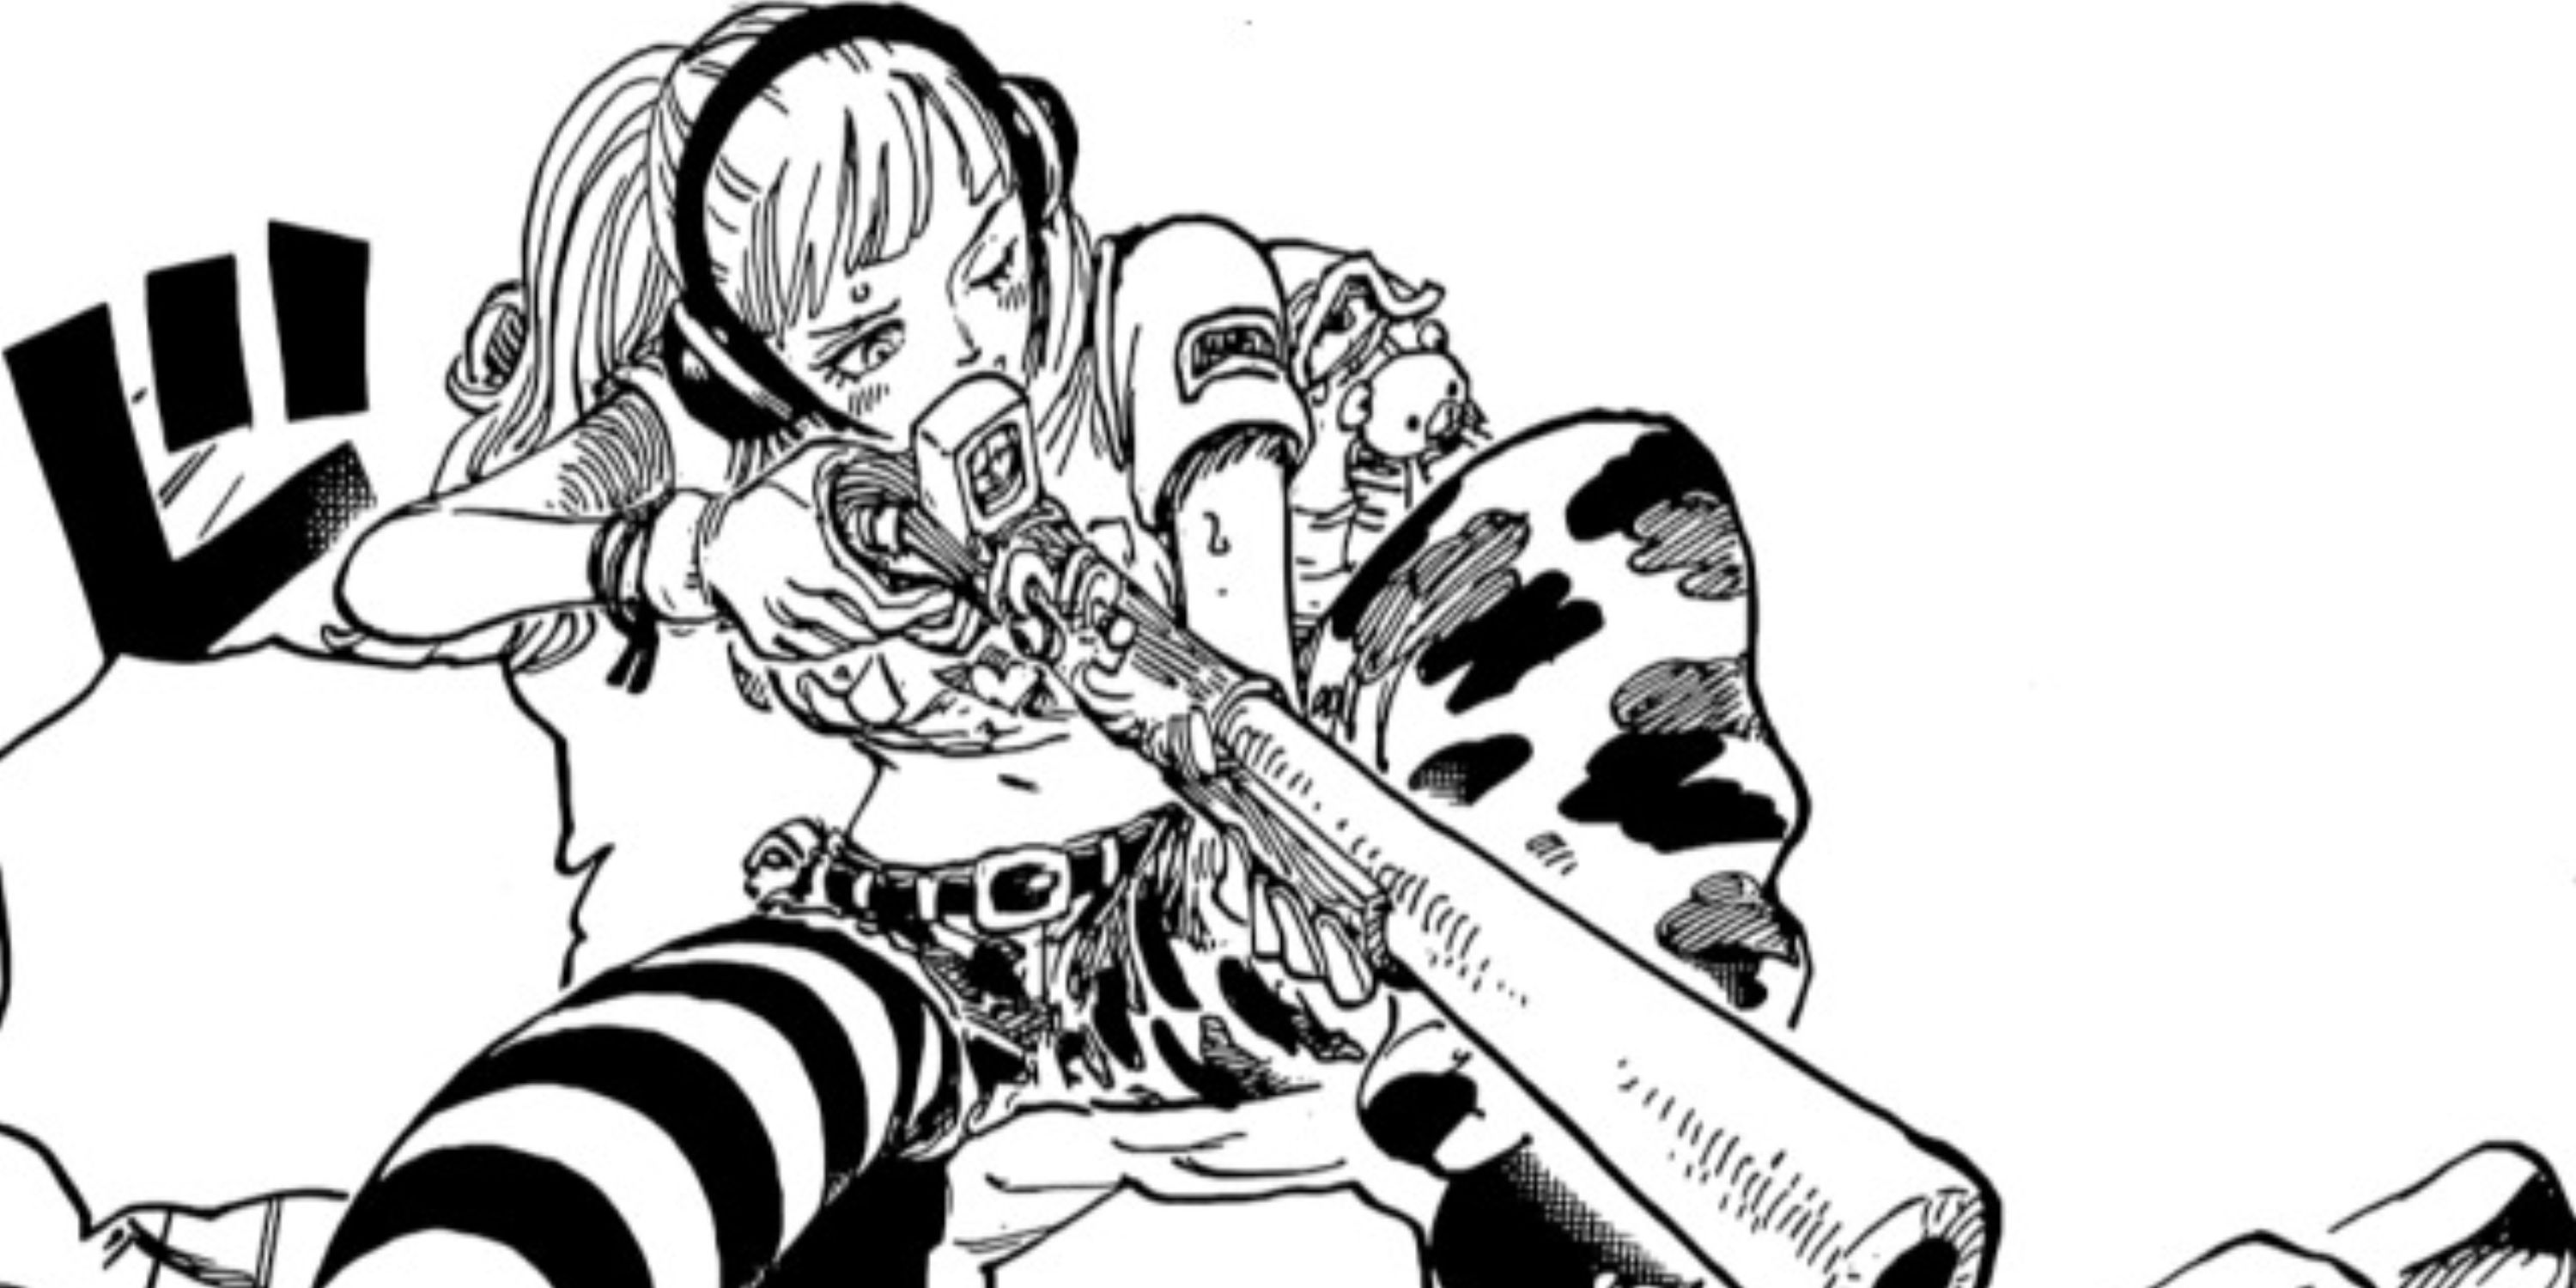 Hibari, uma comandante dos fuzileiros navais e membro da SWORD, usando seu atirador aprimorado pelo Dr. Vegapunk durante o arco Egghead de One Piece